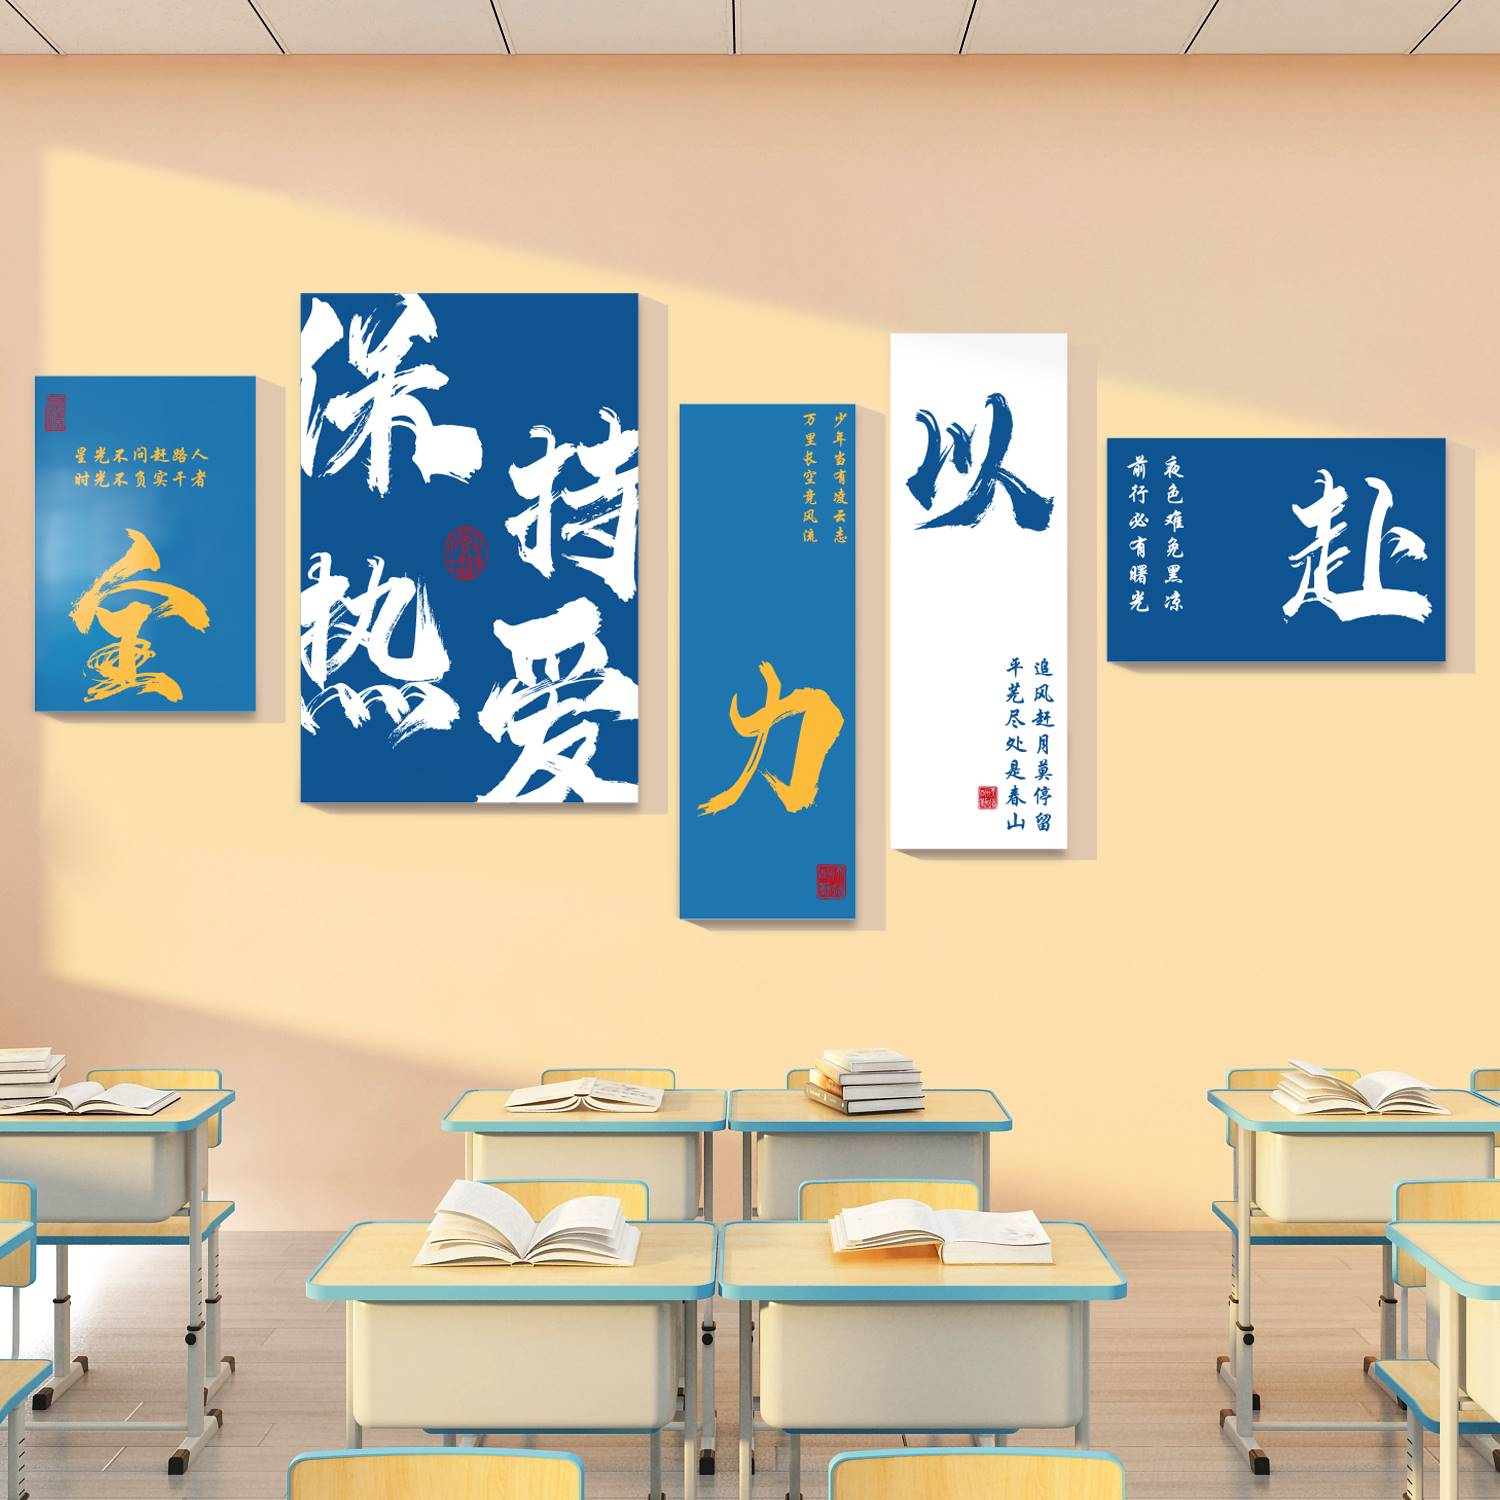 班级布置国学教室装饰文化墙贴画初高中黑板报励志标语自习室创意 - 图0